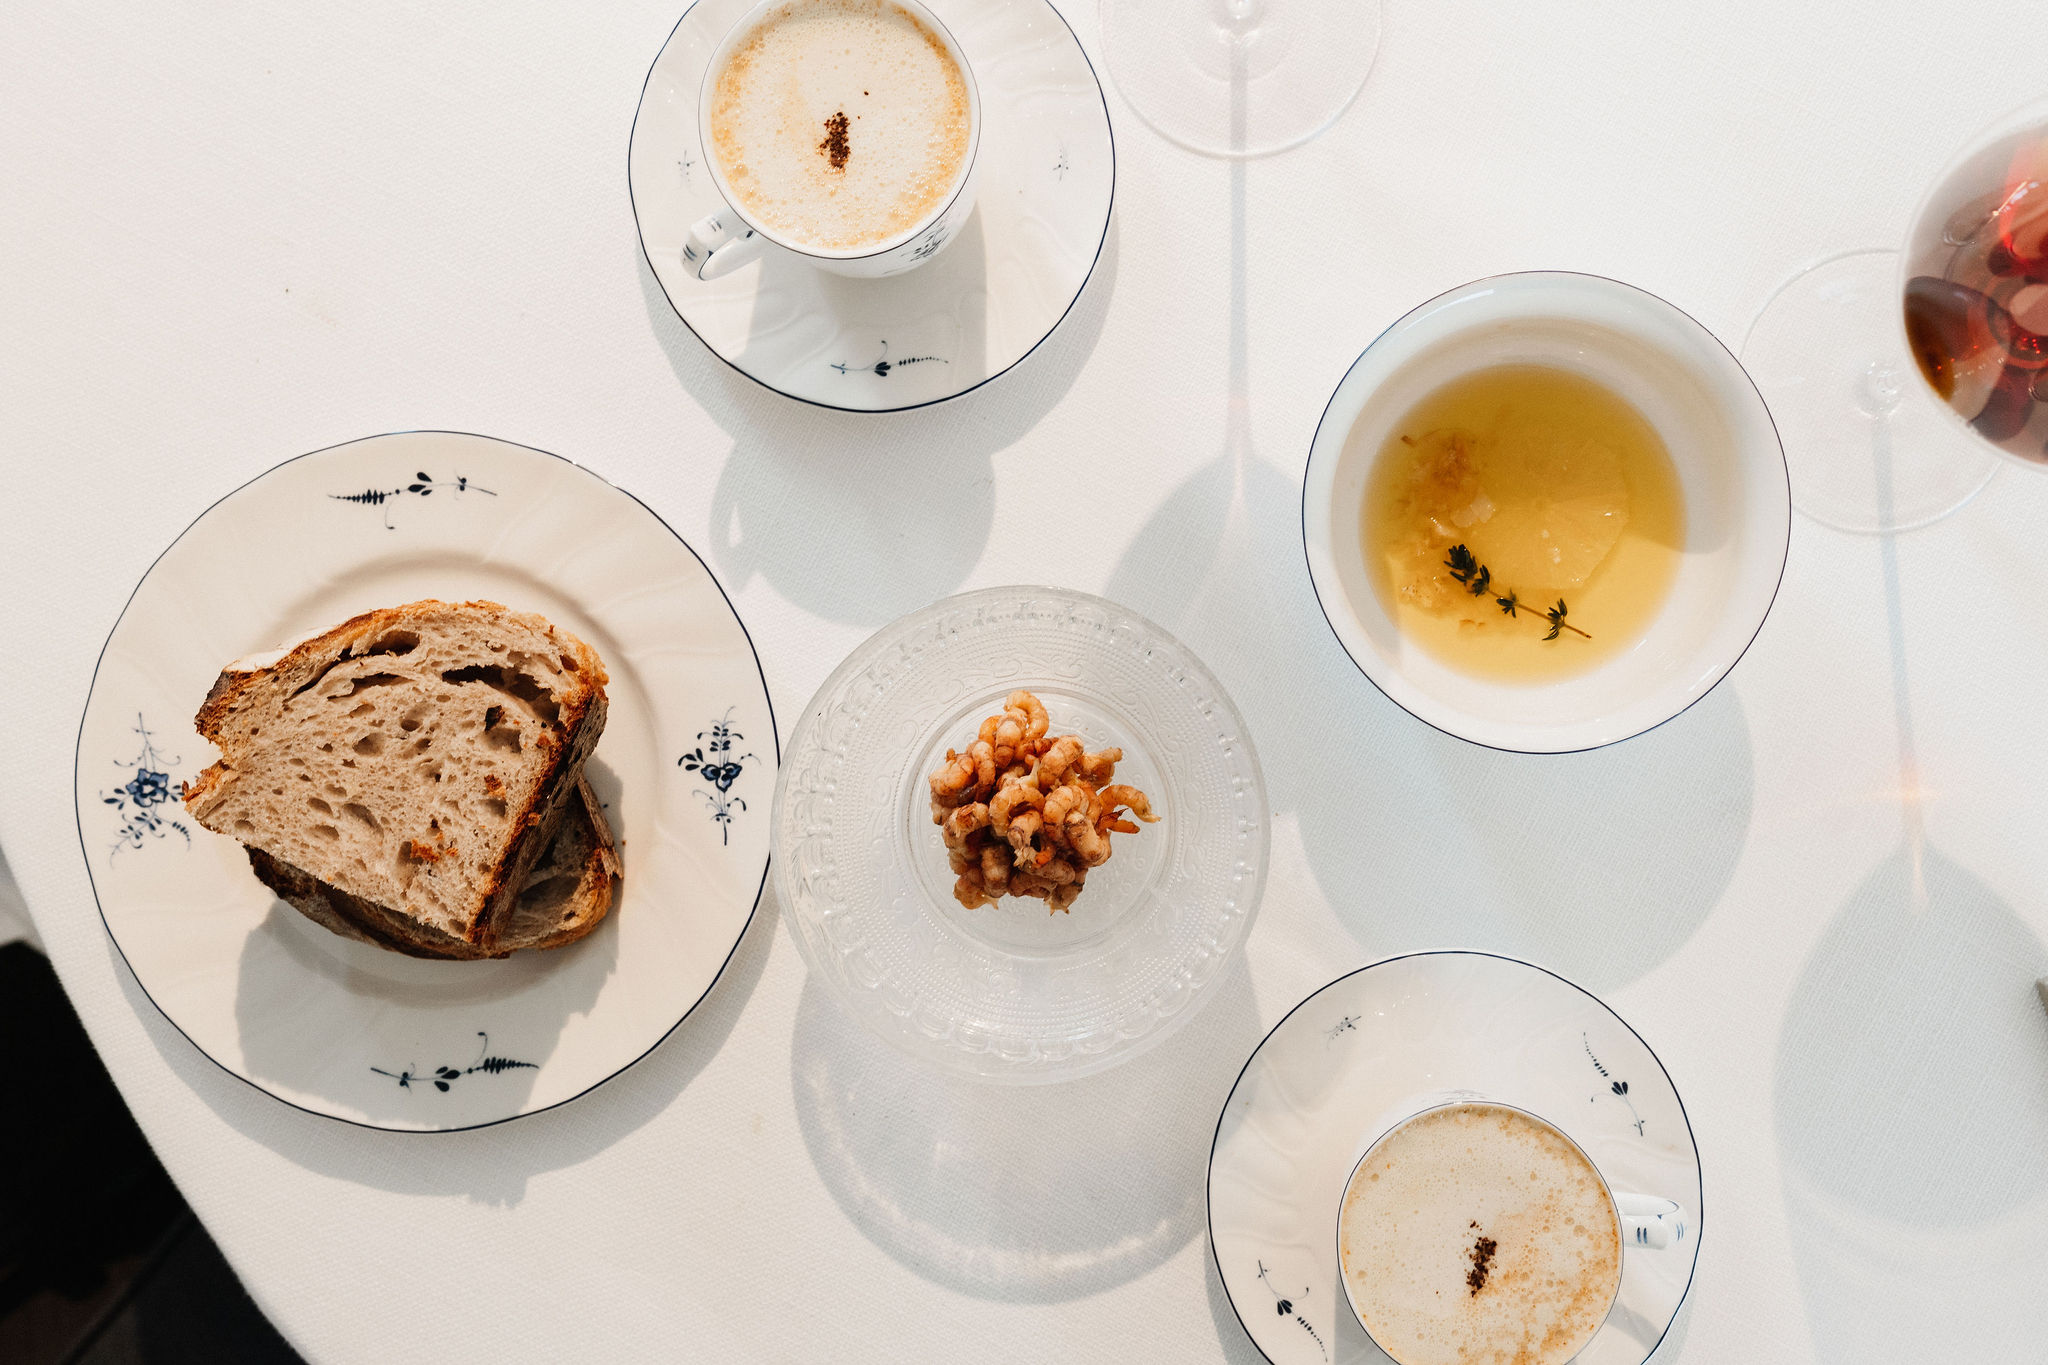 De garnalenbisque met koffieroom, stokvisboter en zelfgebakken zuurdesembrood